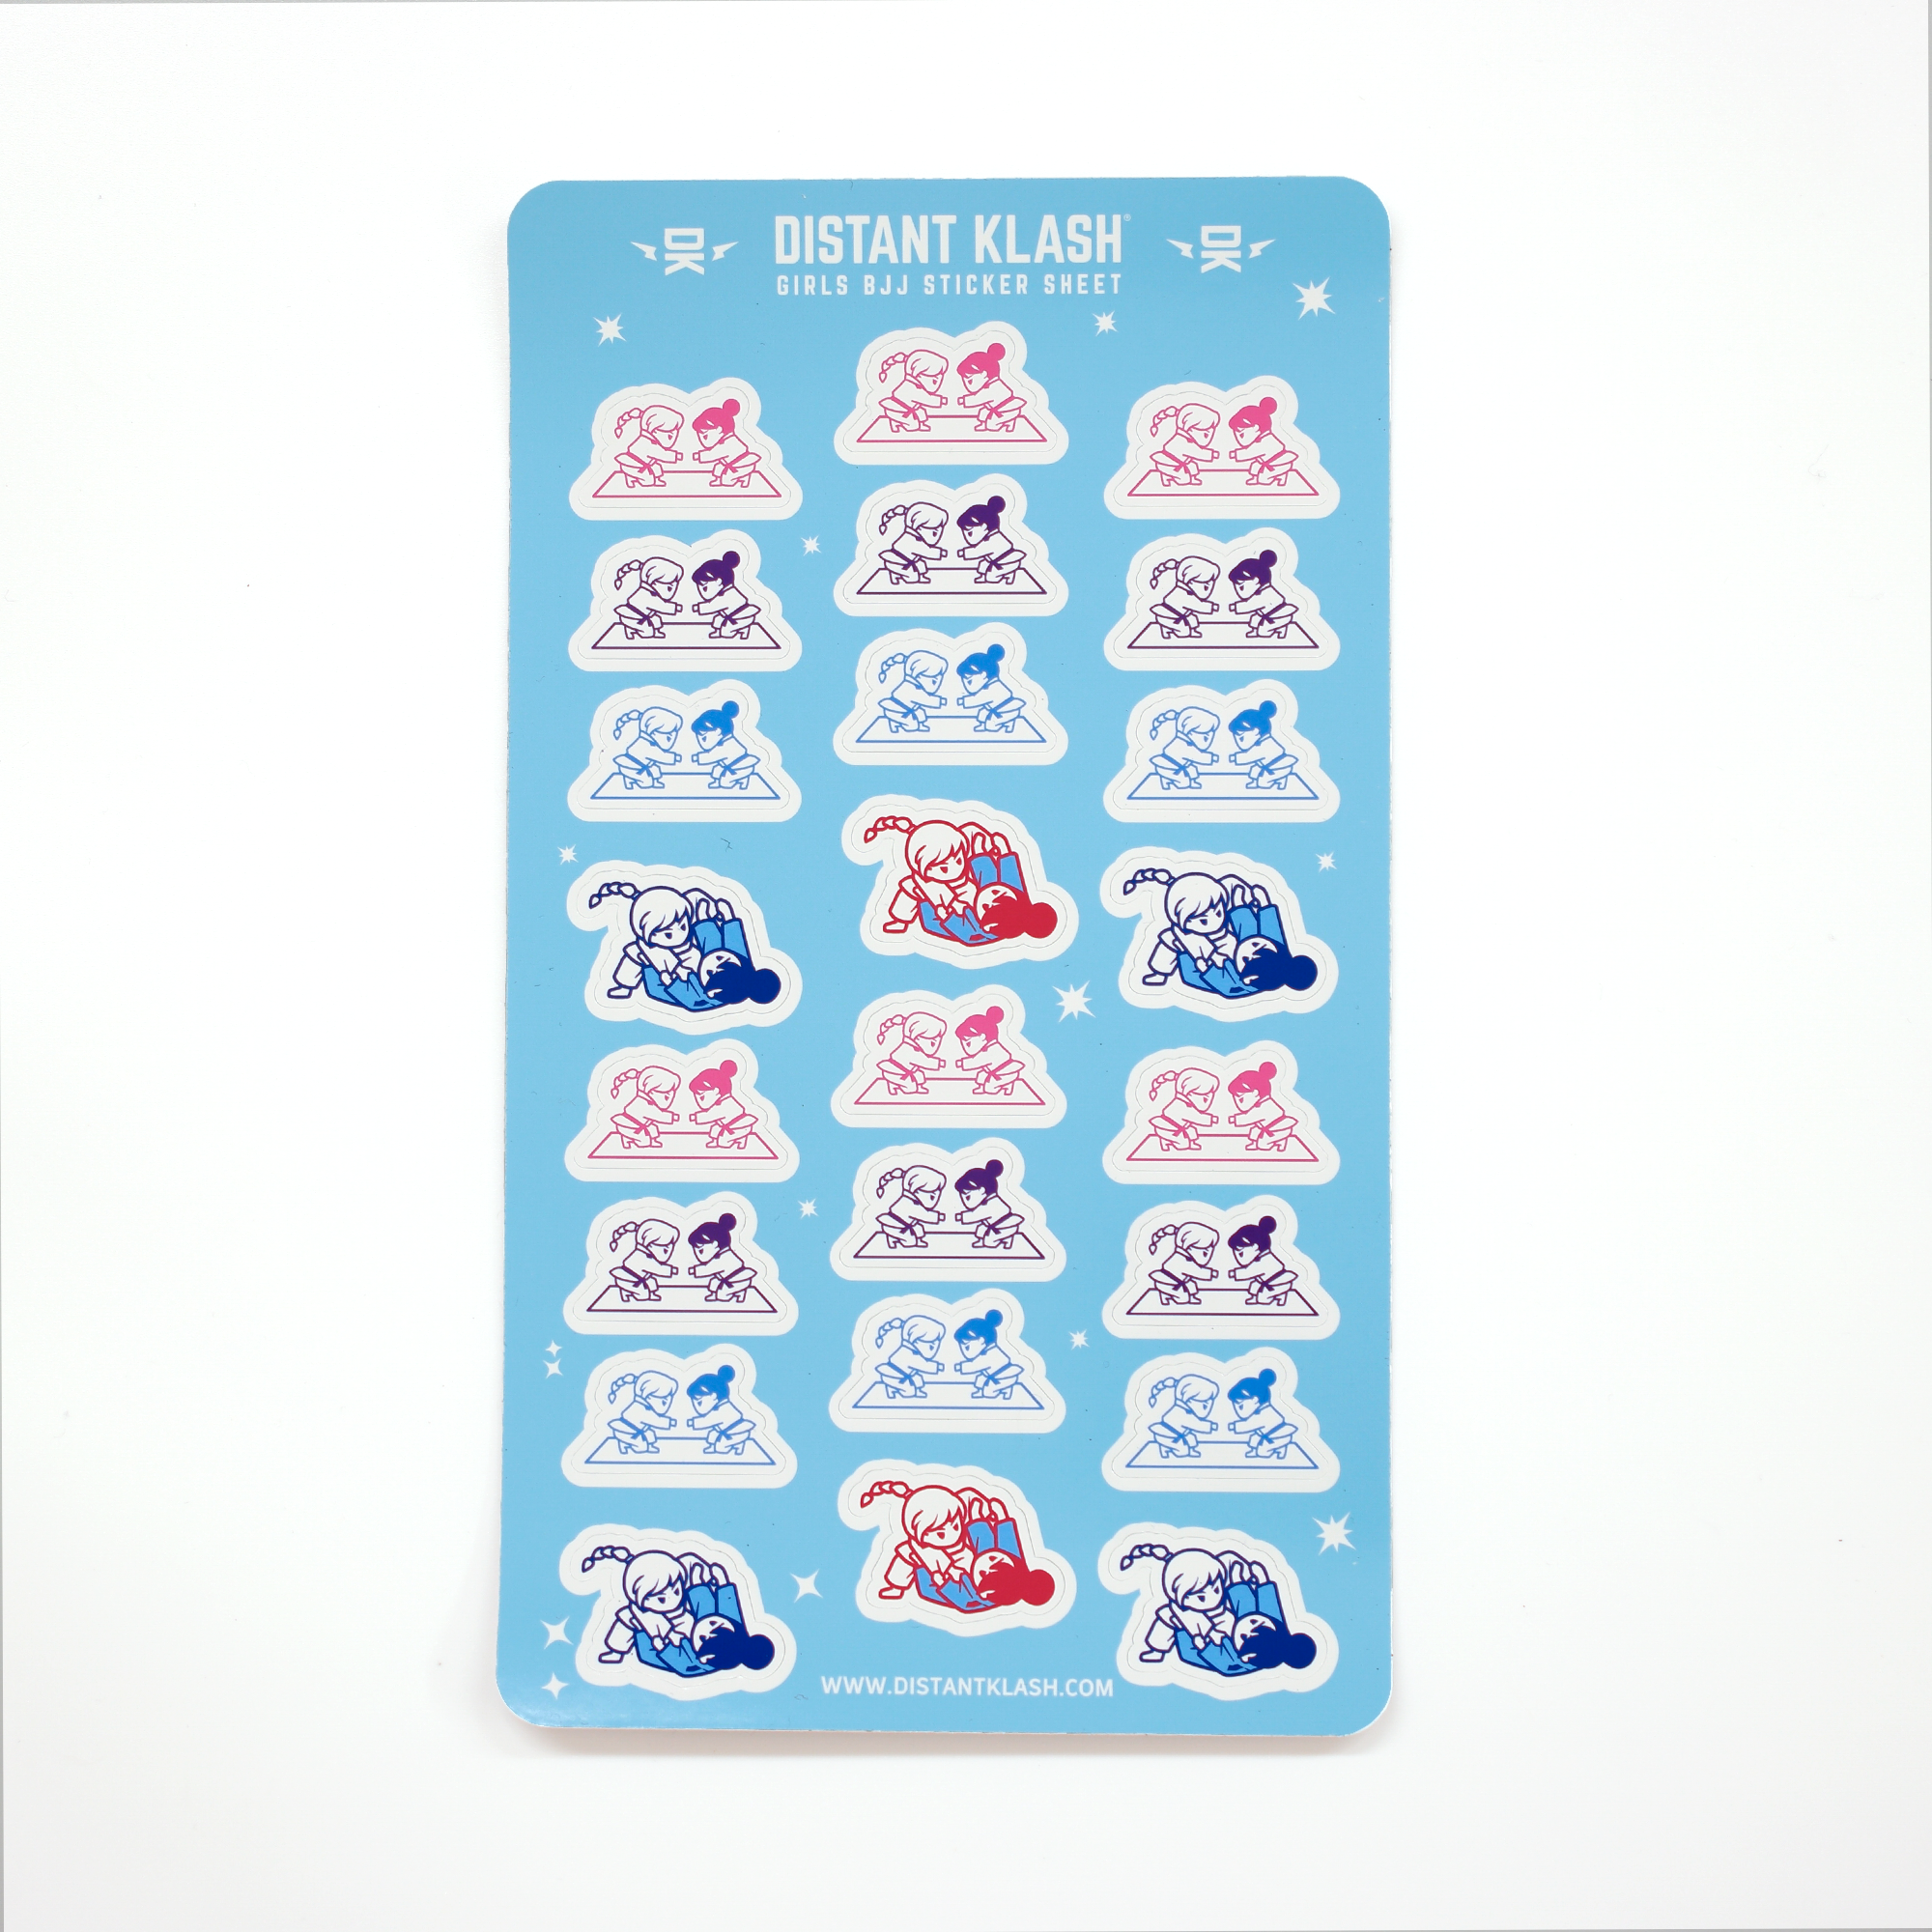 Girls Rolling and Fist Bump Sticker Sheet - Blue